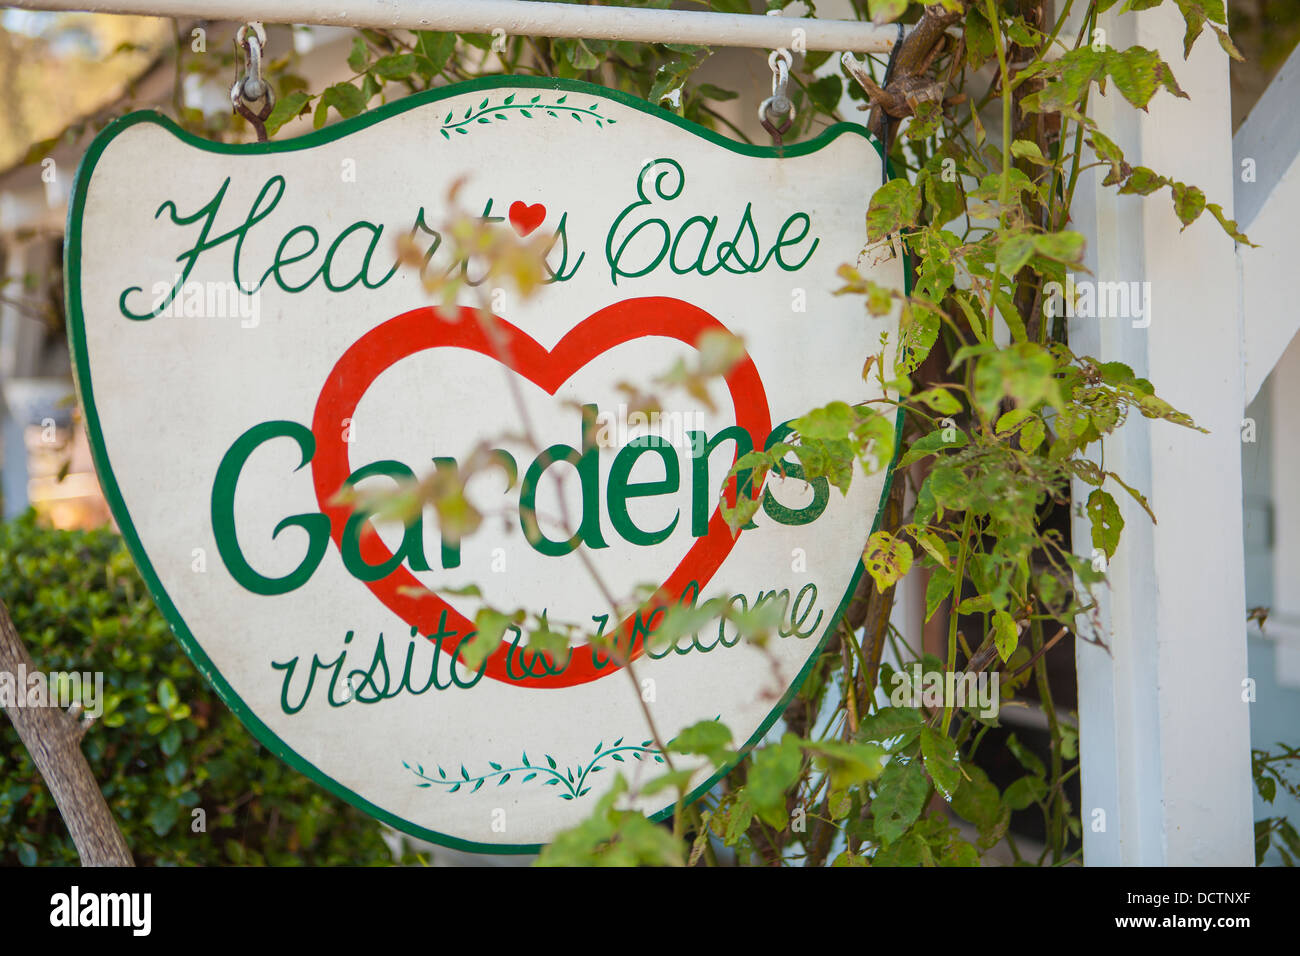 La facilidad del corazón jardines firmar, Cambria, California, Estados Unidos de América Foto de stock